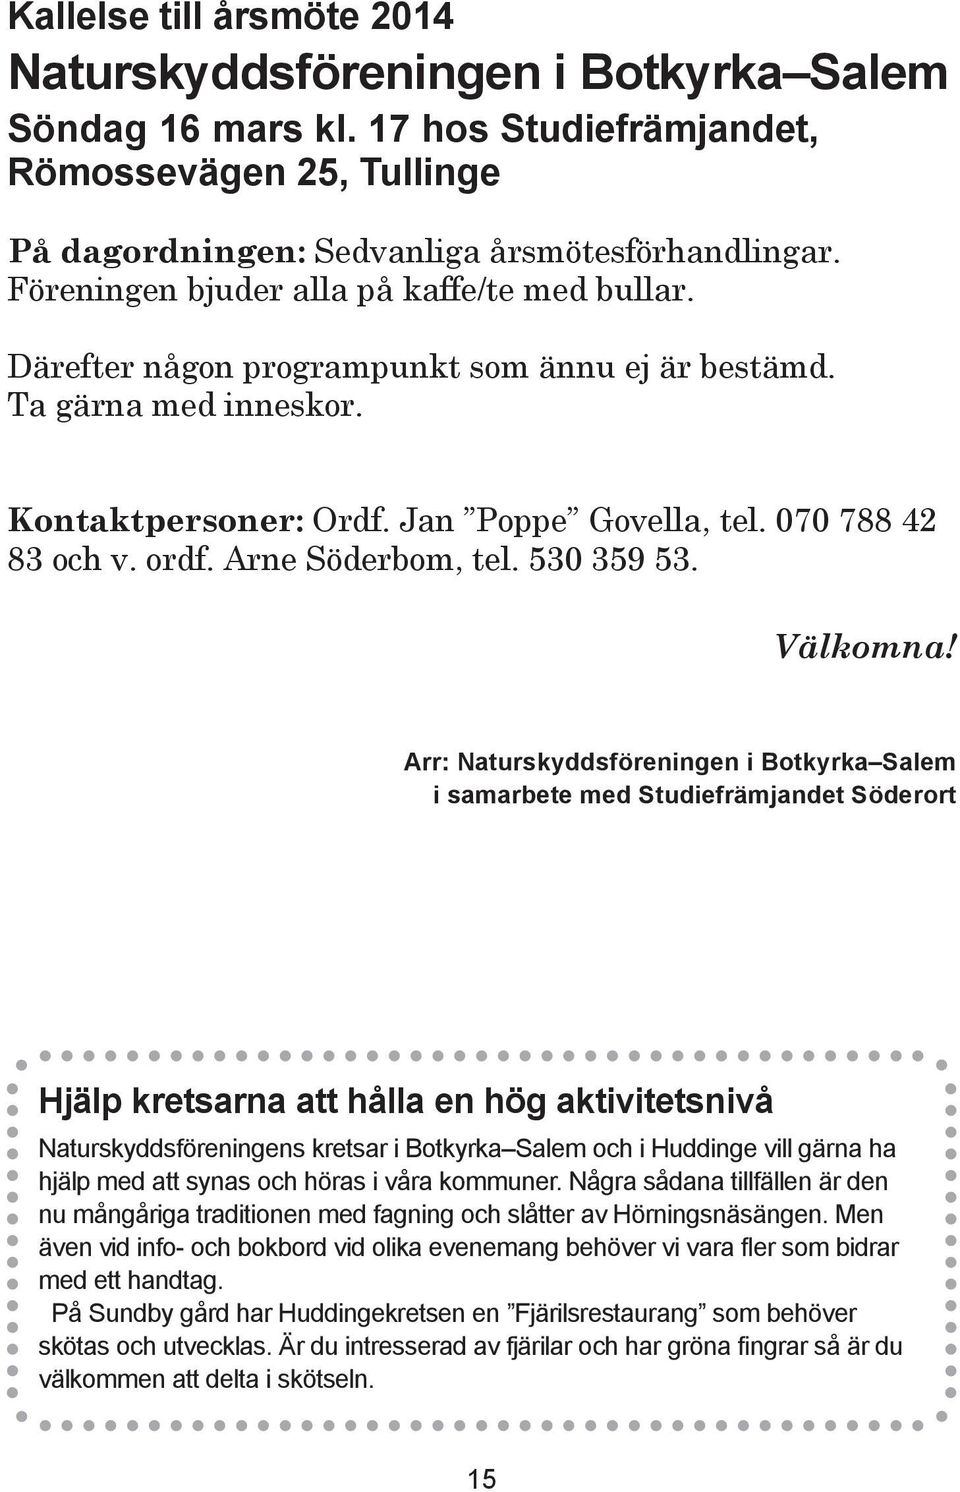 Arne Söderbom, tel. 530 359 53. Välkomna!